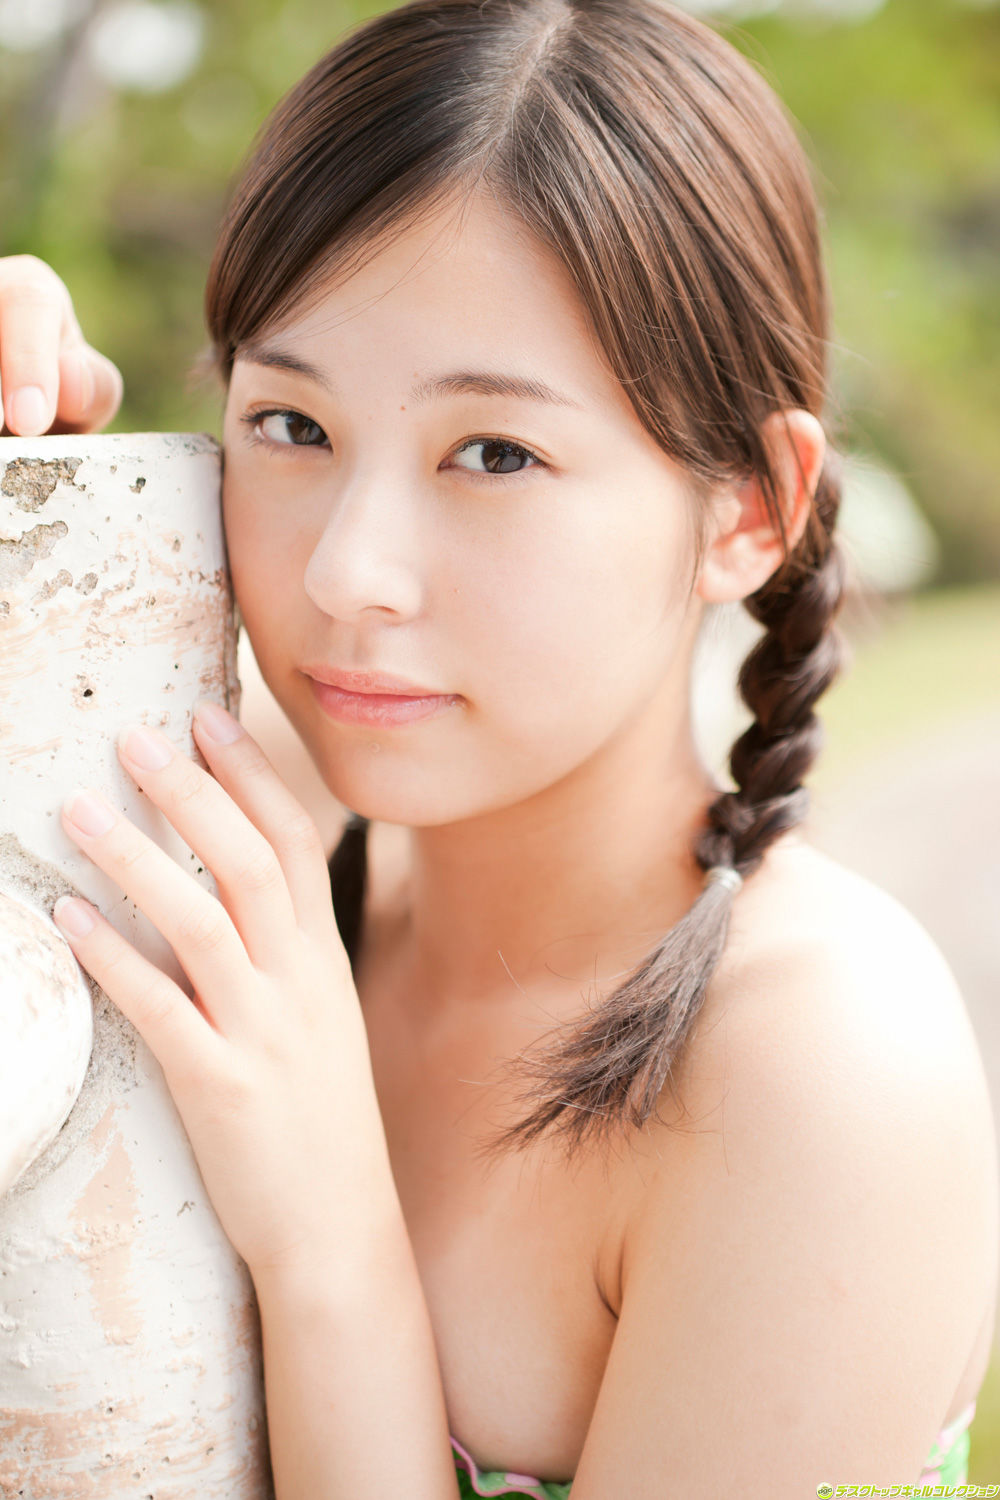 [dgc] No 996 Mikako Horikawa Photo Share Erotic Asian Girl Picture And Livestream